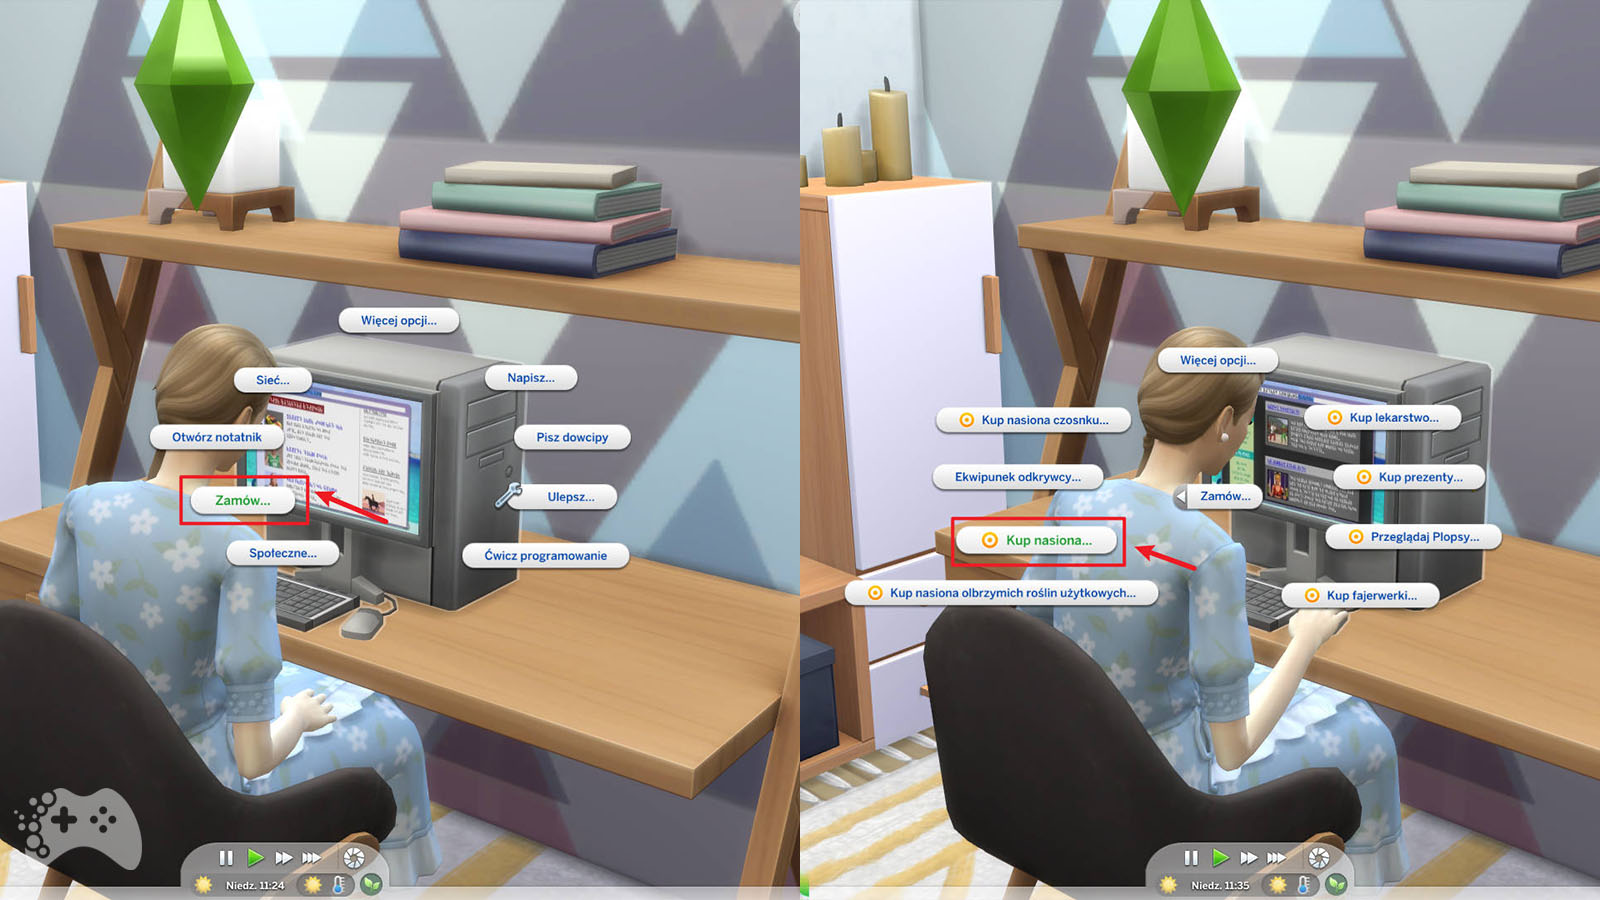 Jak Miec Dziewczynke W Sims 4 Jak urodzić dziewczynkę lub chłopca w The Sims 4? - Portal dla graczy